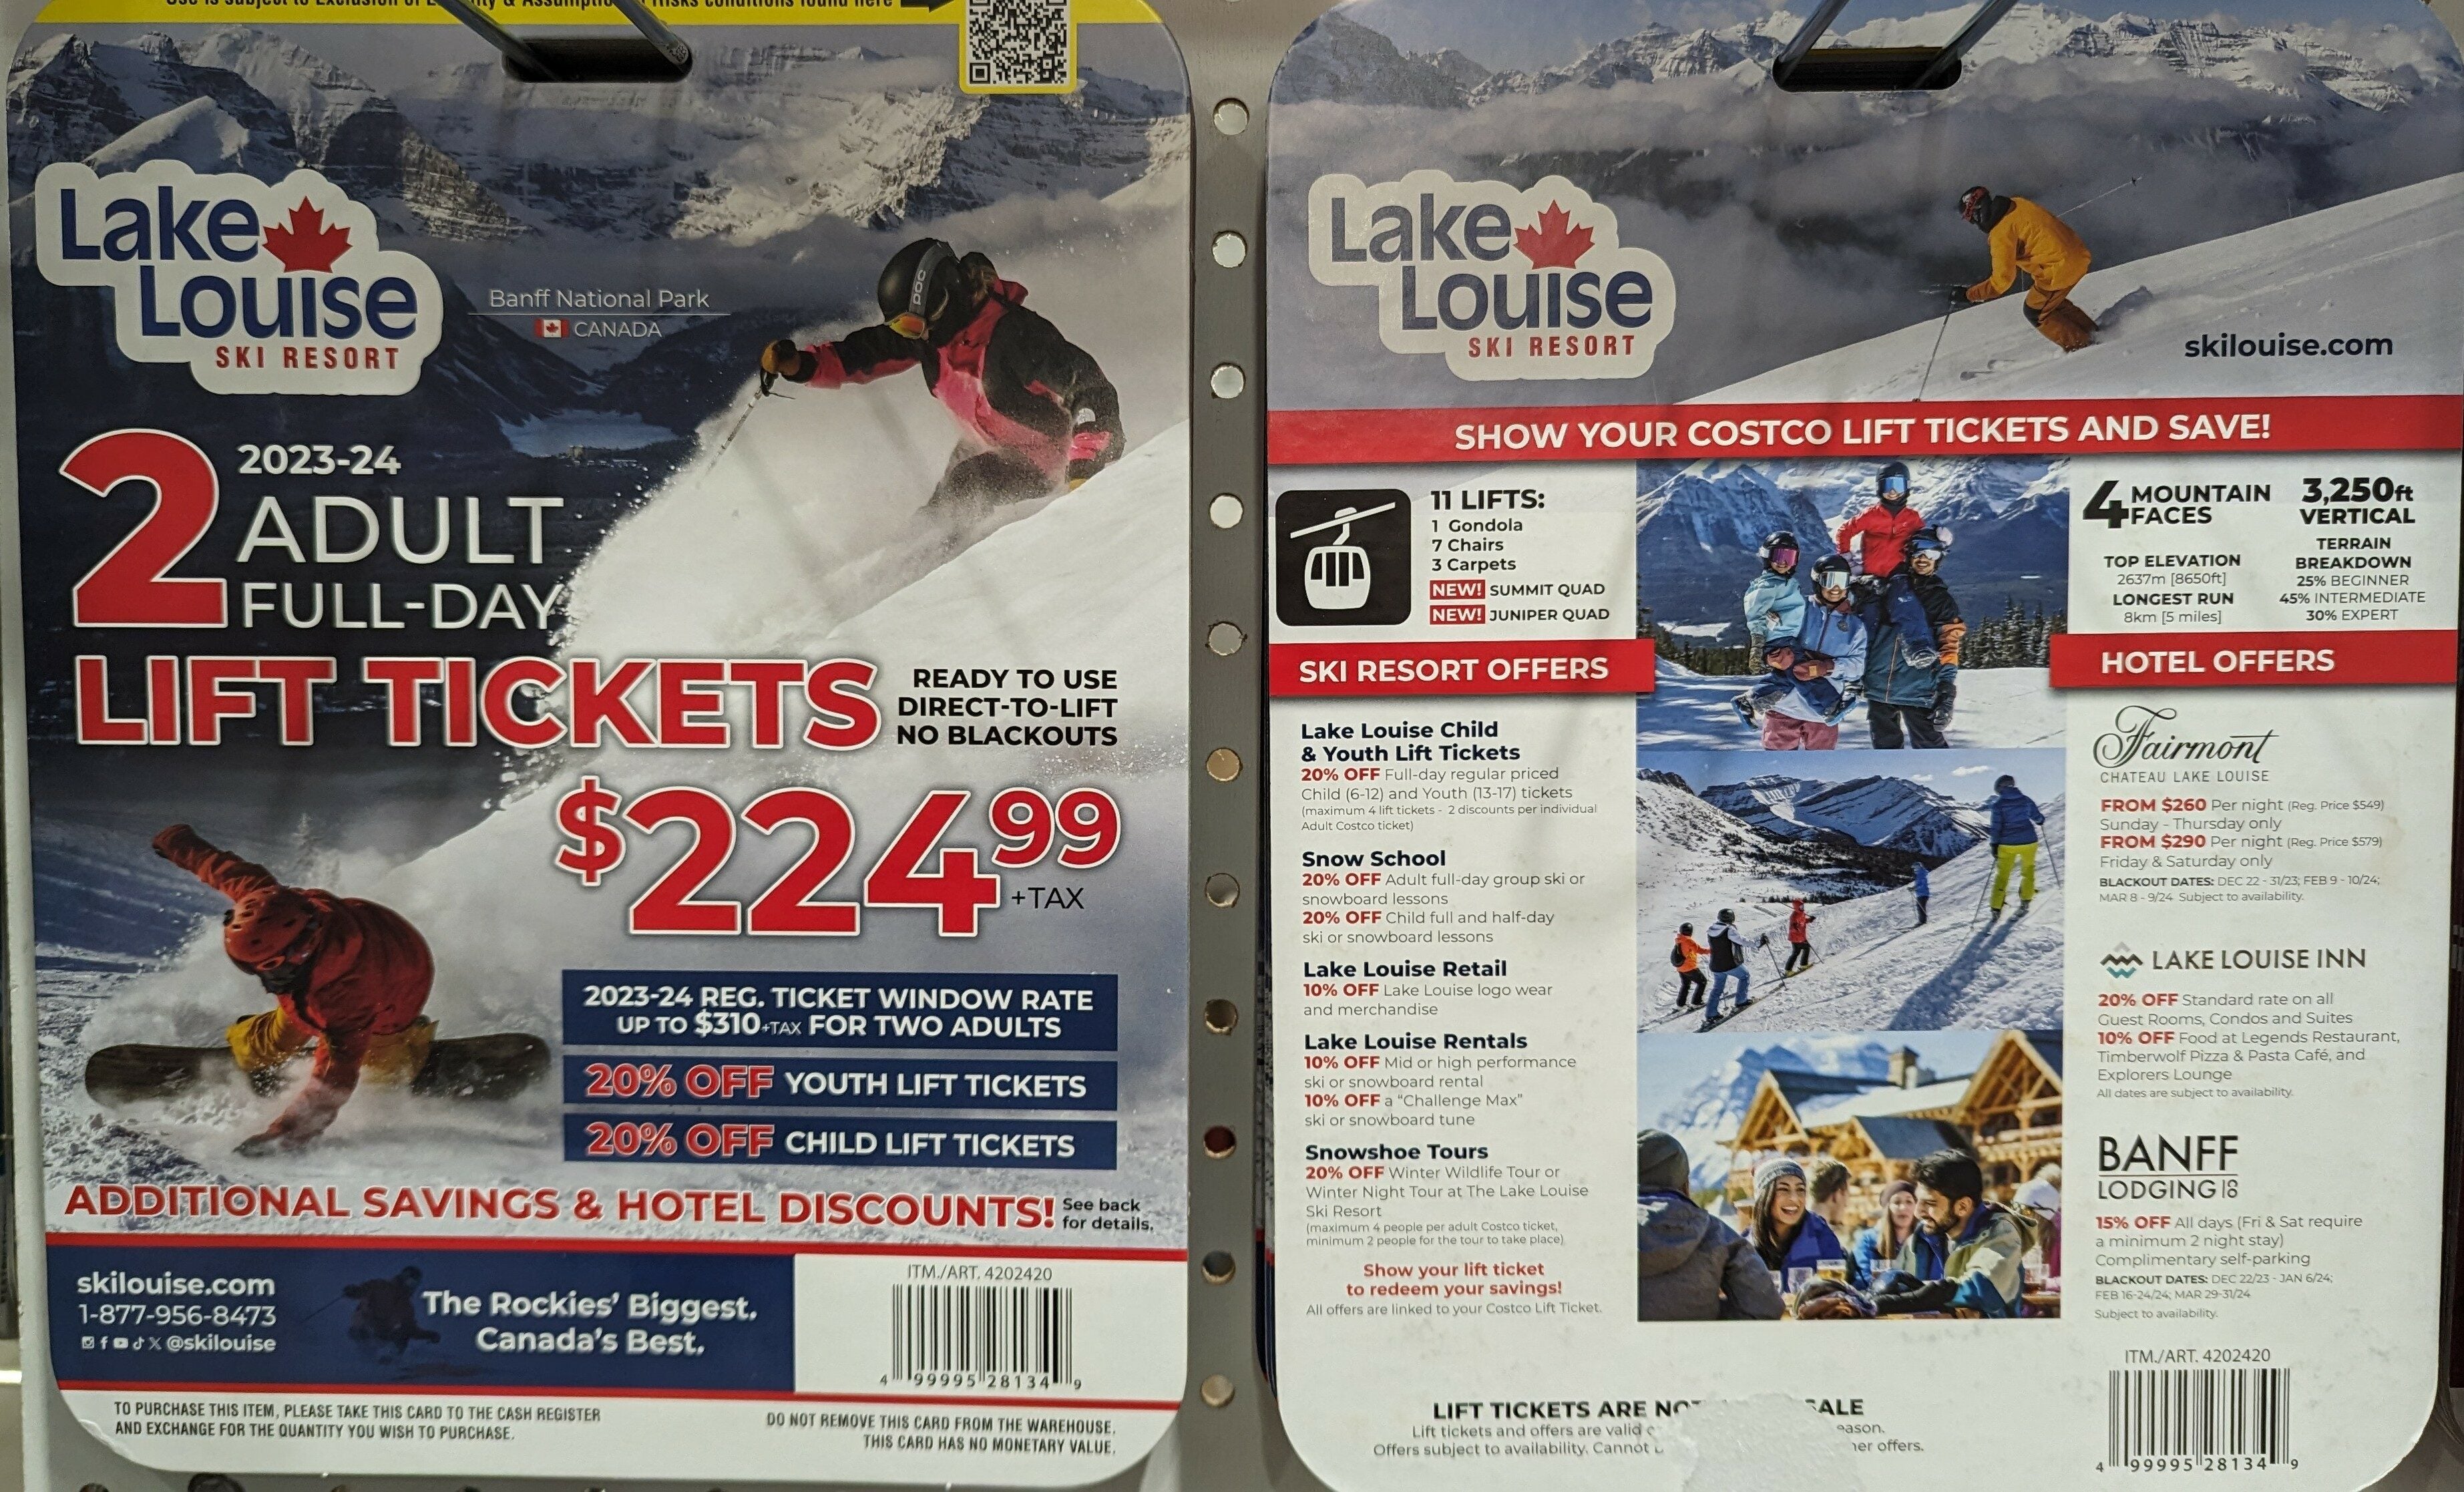 [Costco] Western Canada (AB BC) Ski Lift deals 2023/2024 RedFlagDeals